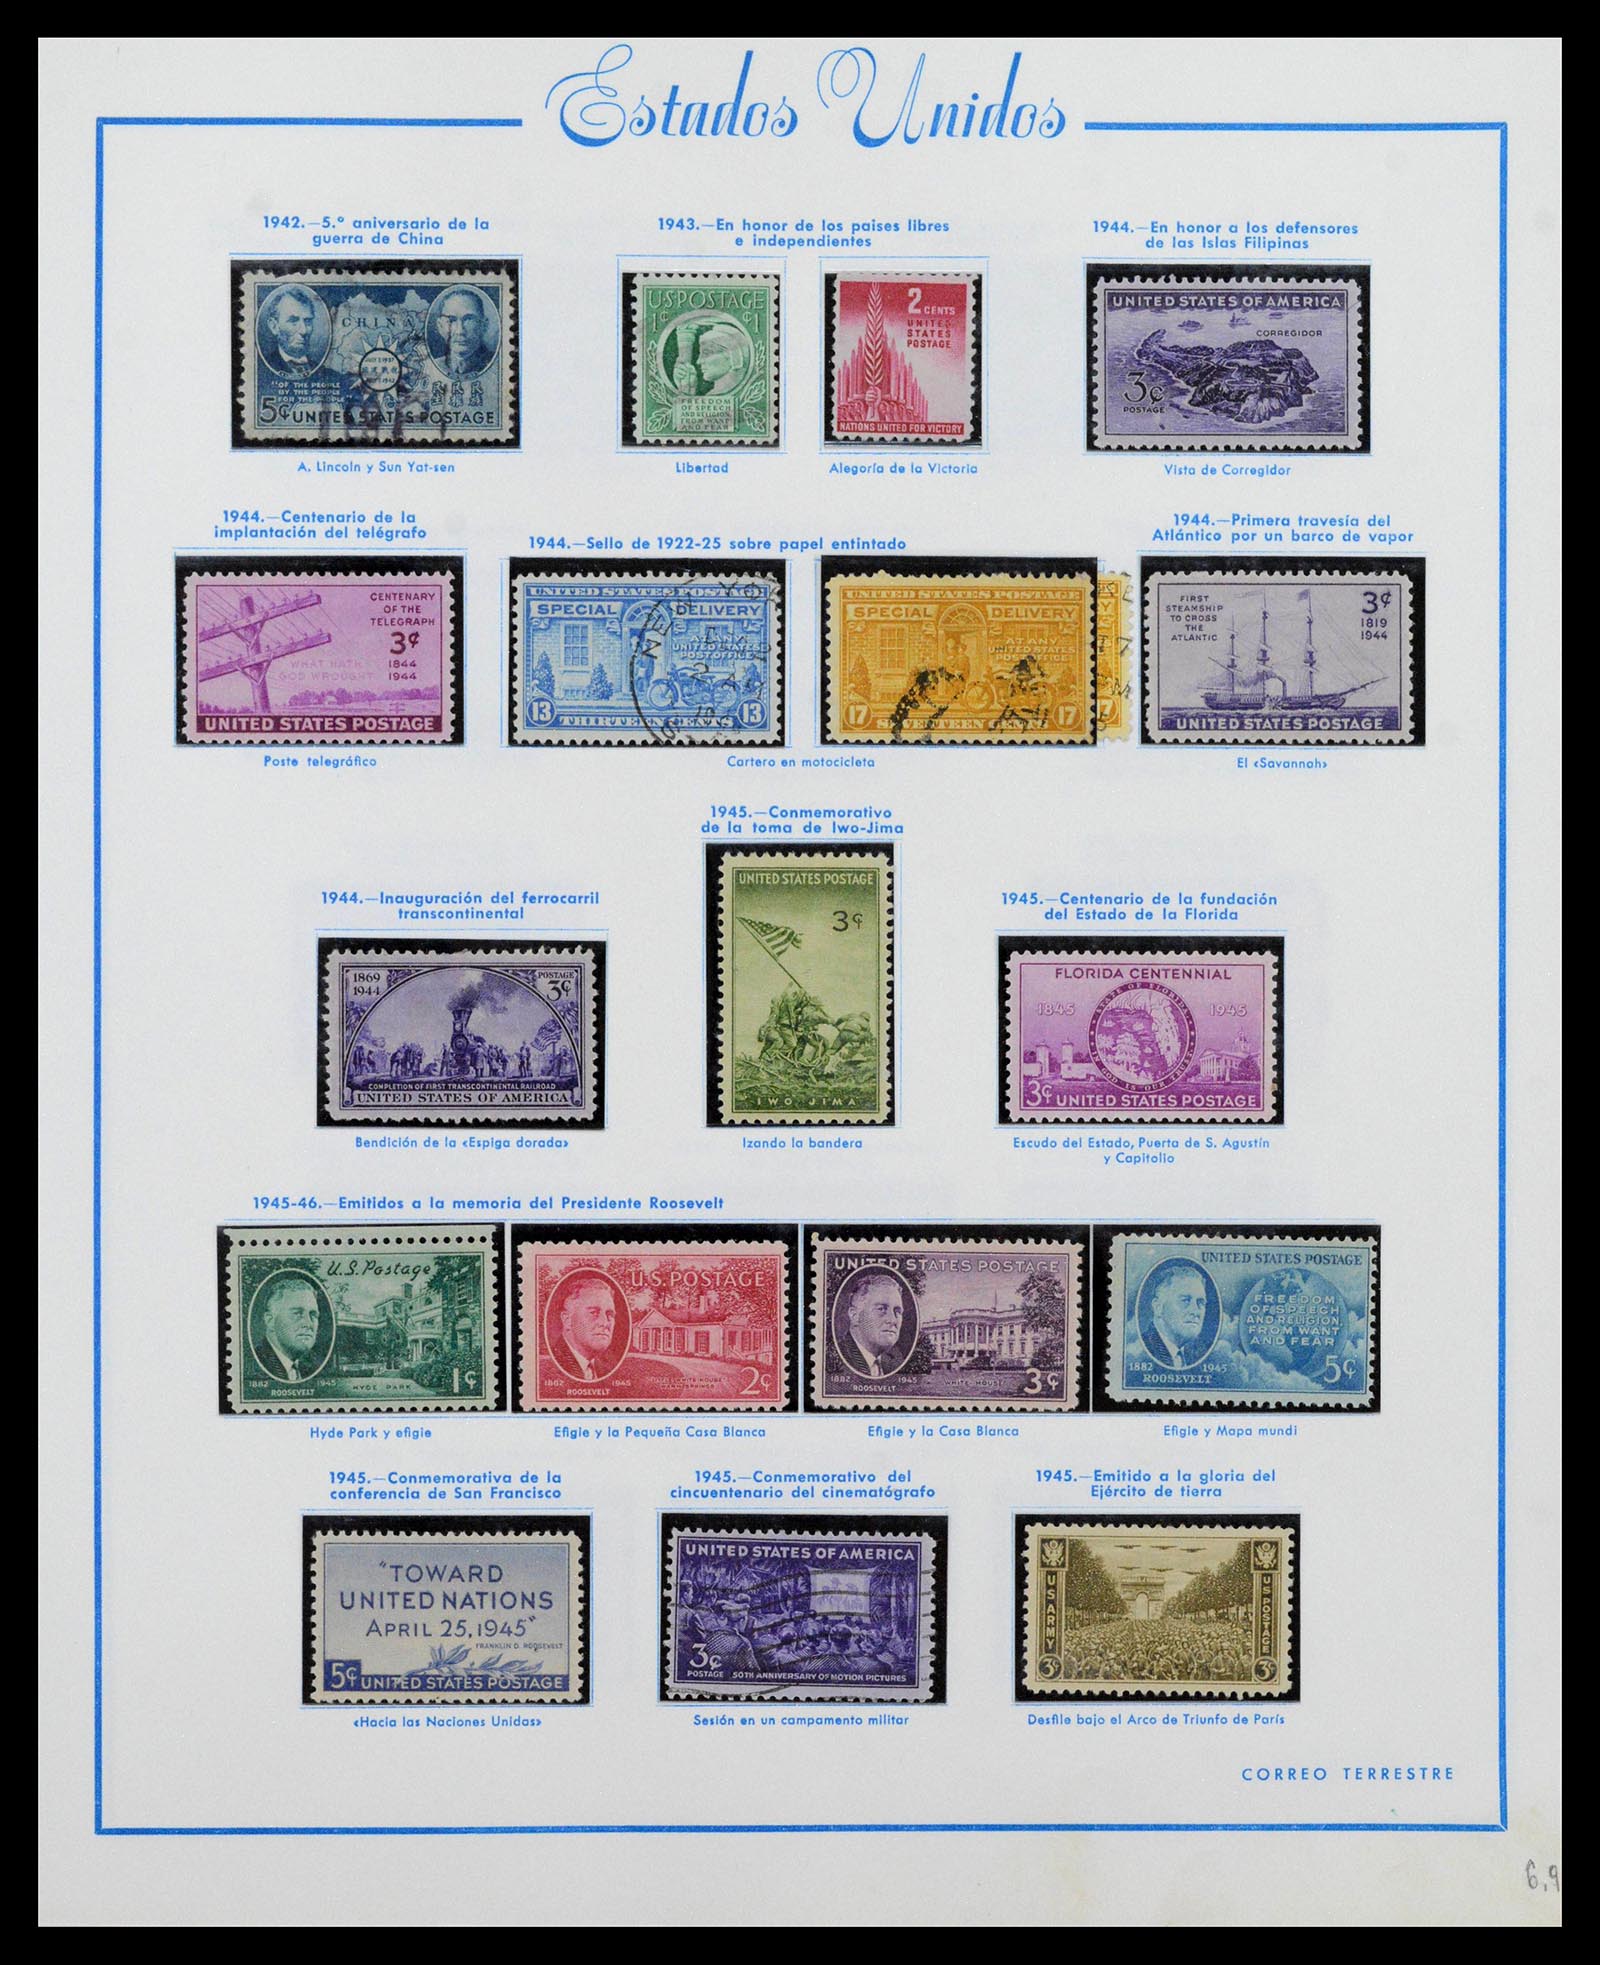 39190 0025 - Stamp collection 39190 USA 1851-1975.